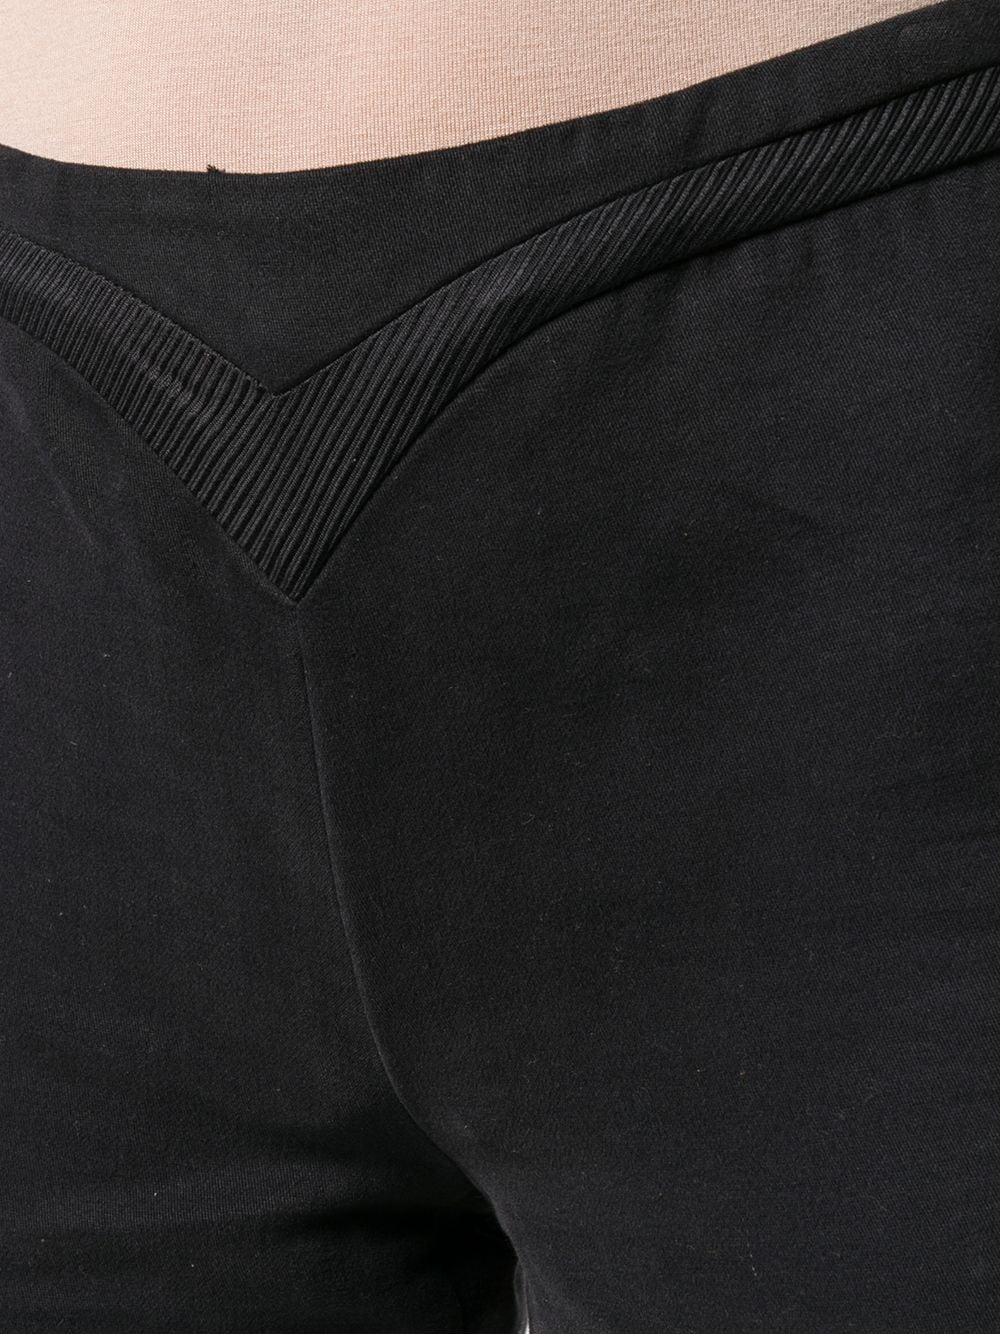 Pre-owned Versace 范思哲 拼接裤腰长裤 In Black